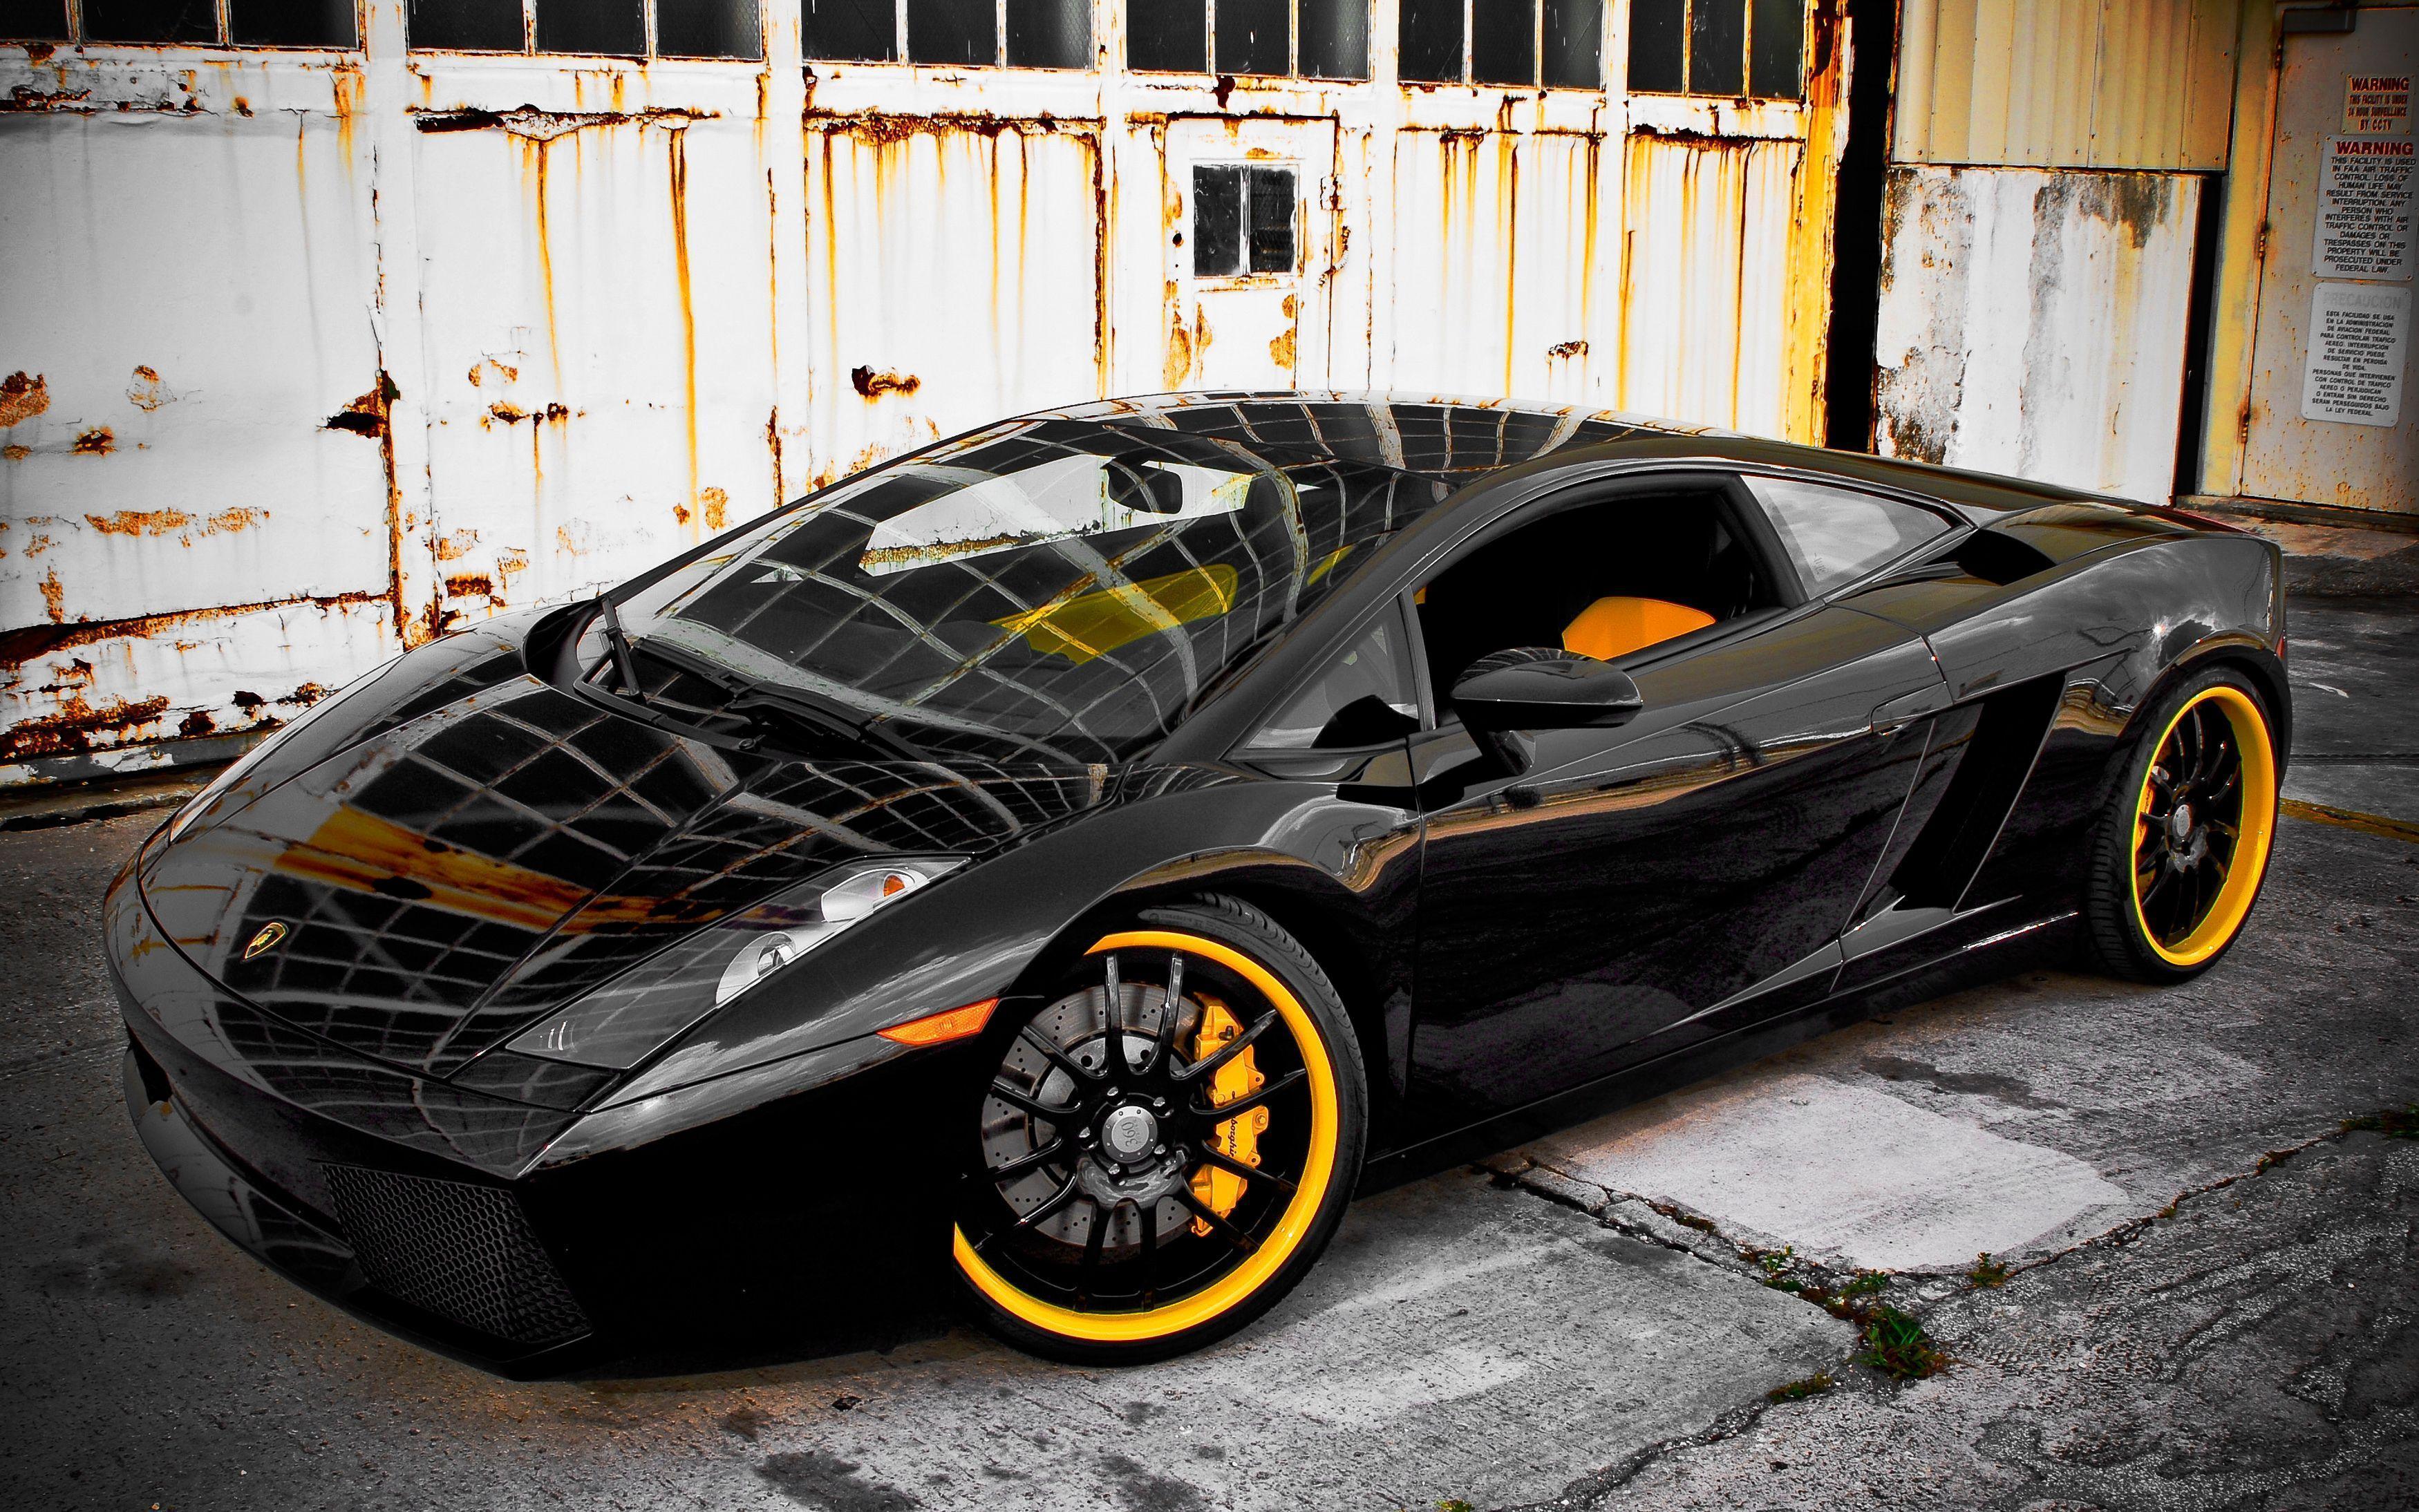 Lamborghini Gallardo Wallpaper Image Photo Picture Background